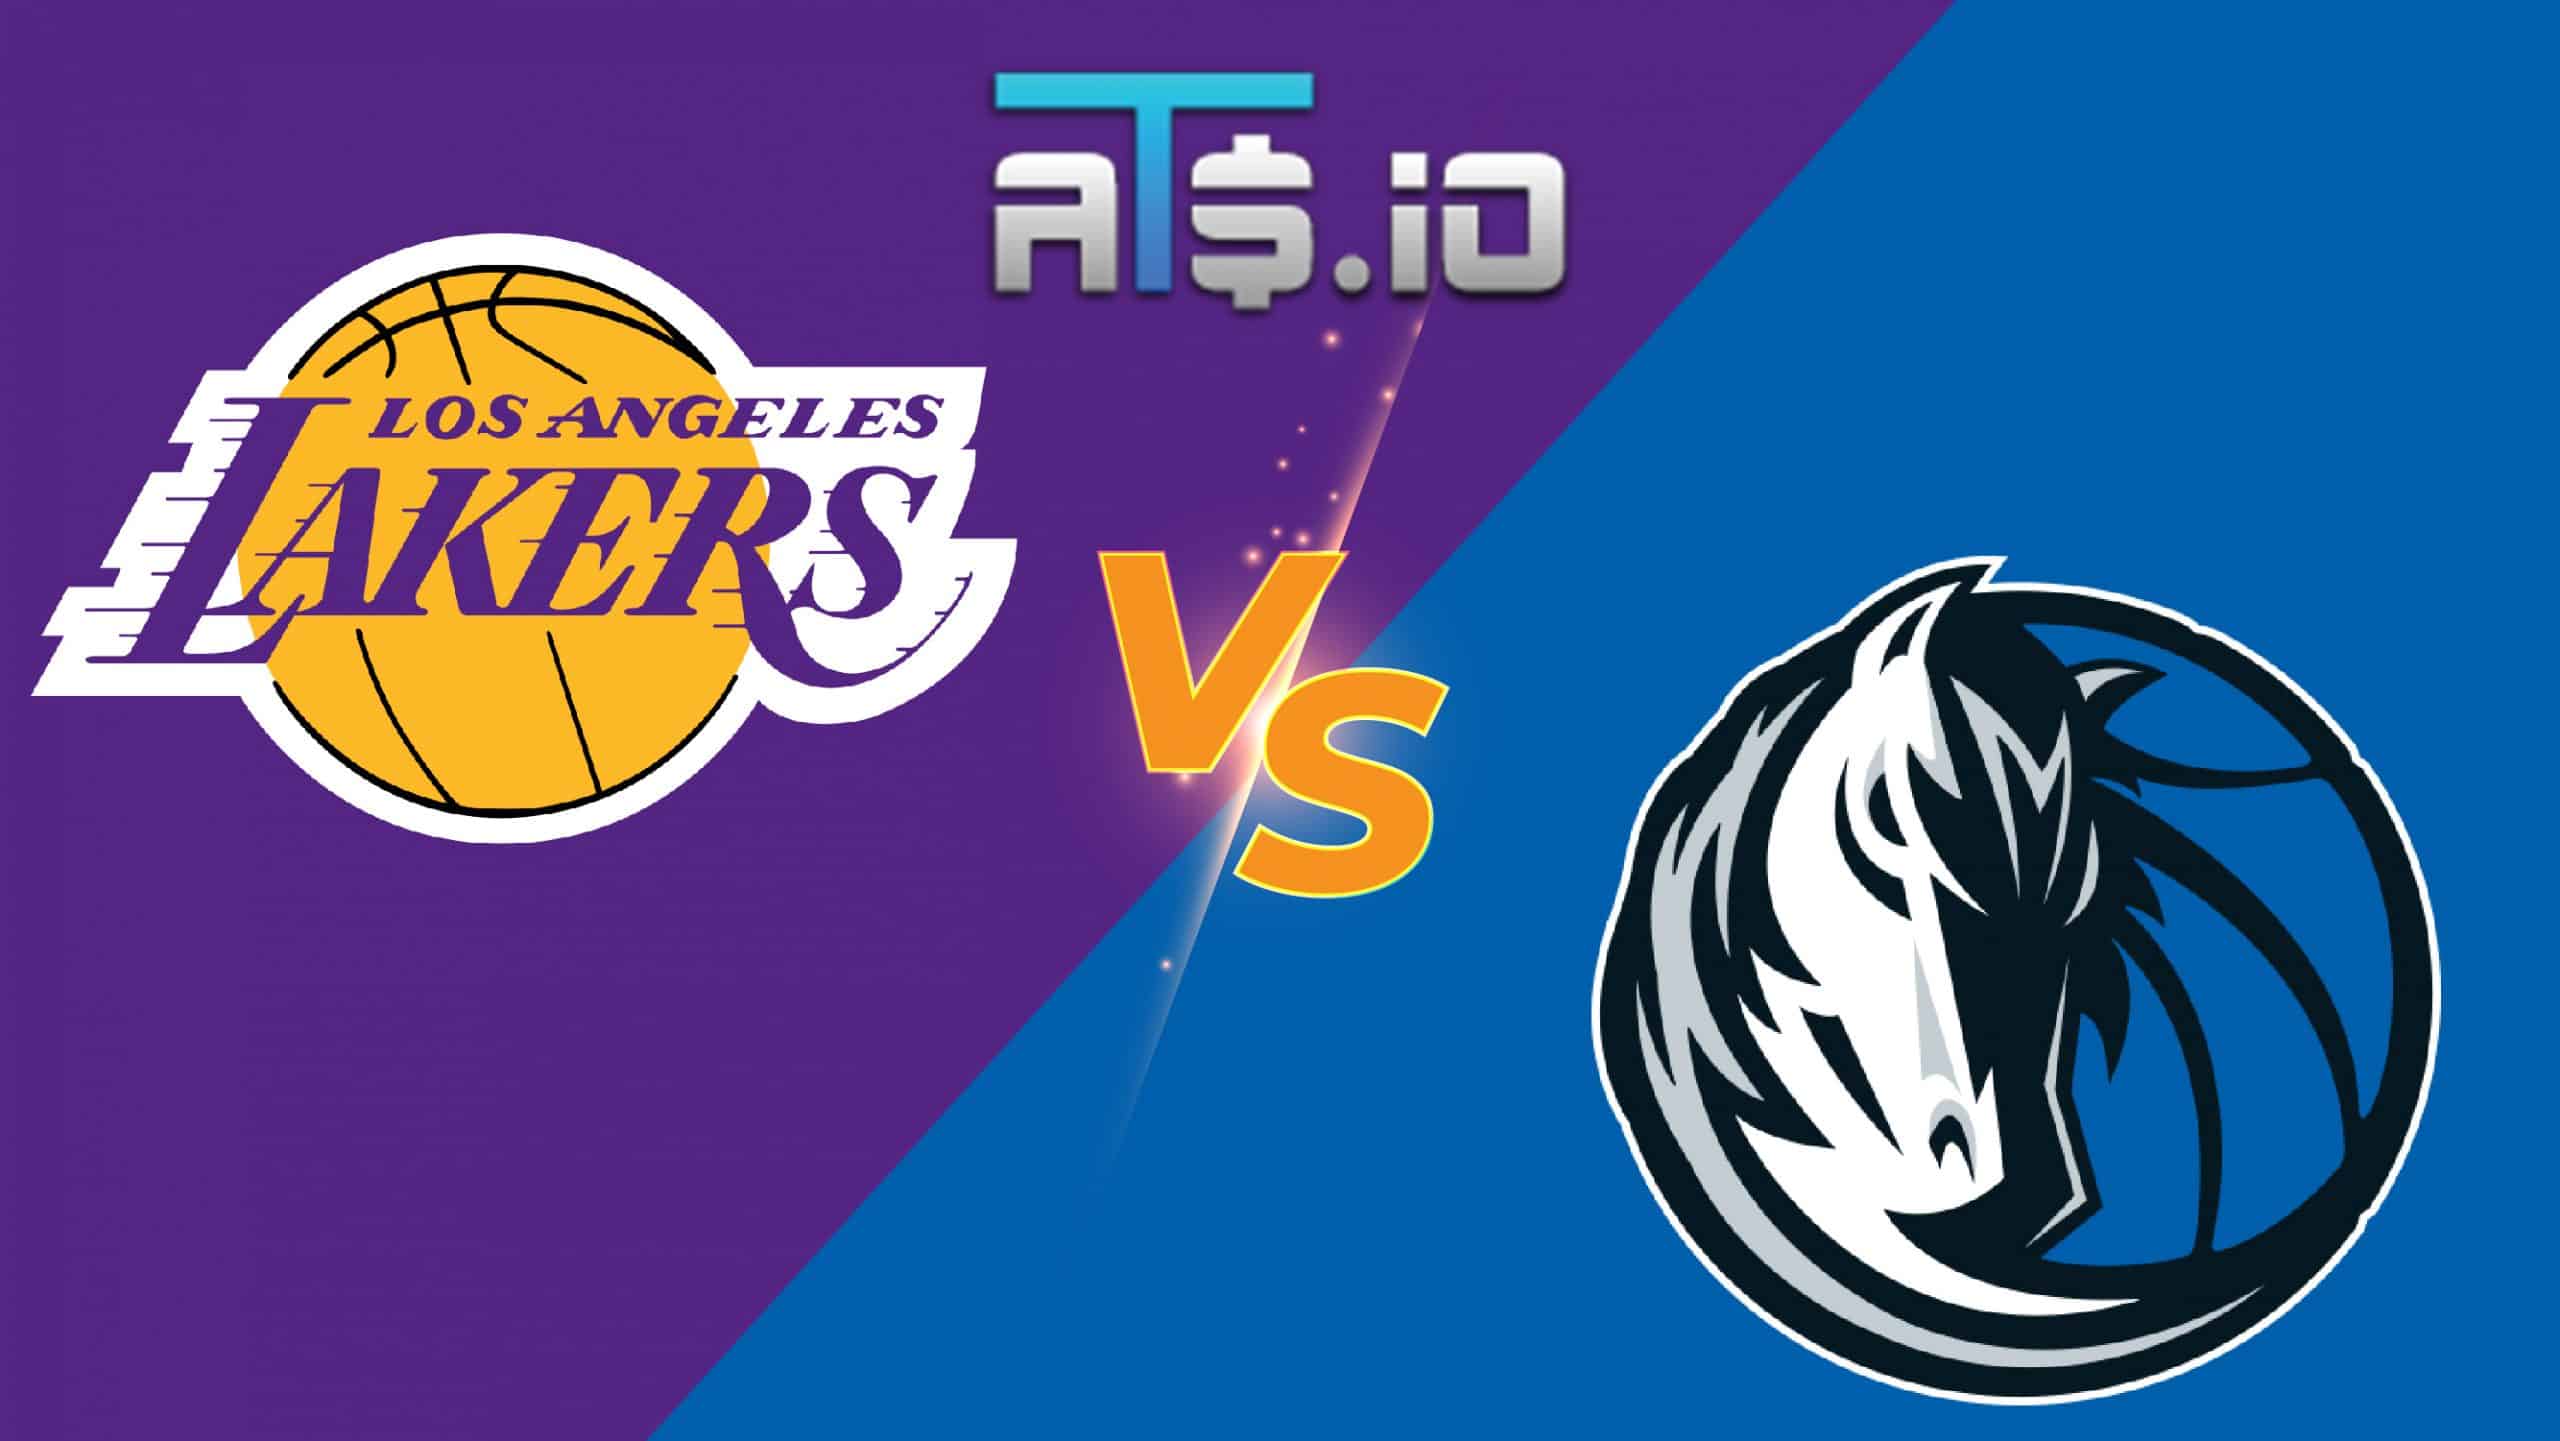 Dallas Mavericks vs LA Lakers Prediction & Match Preview - March